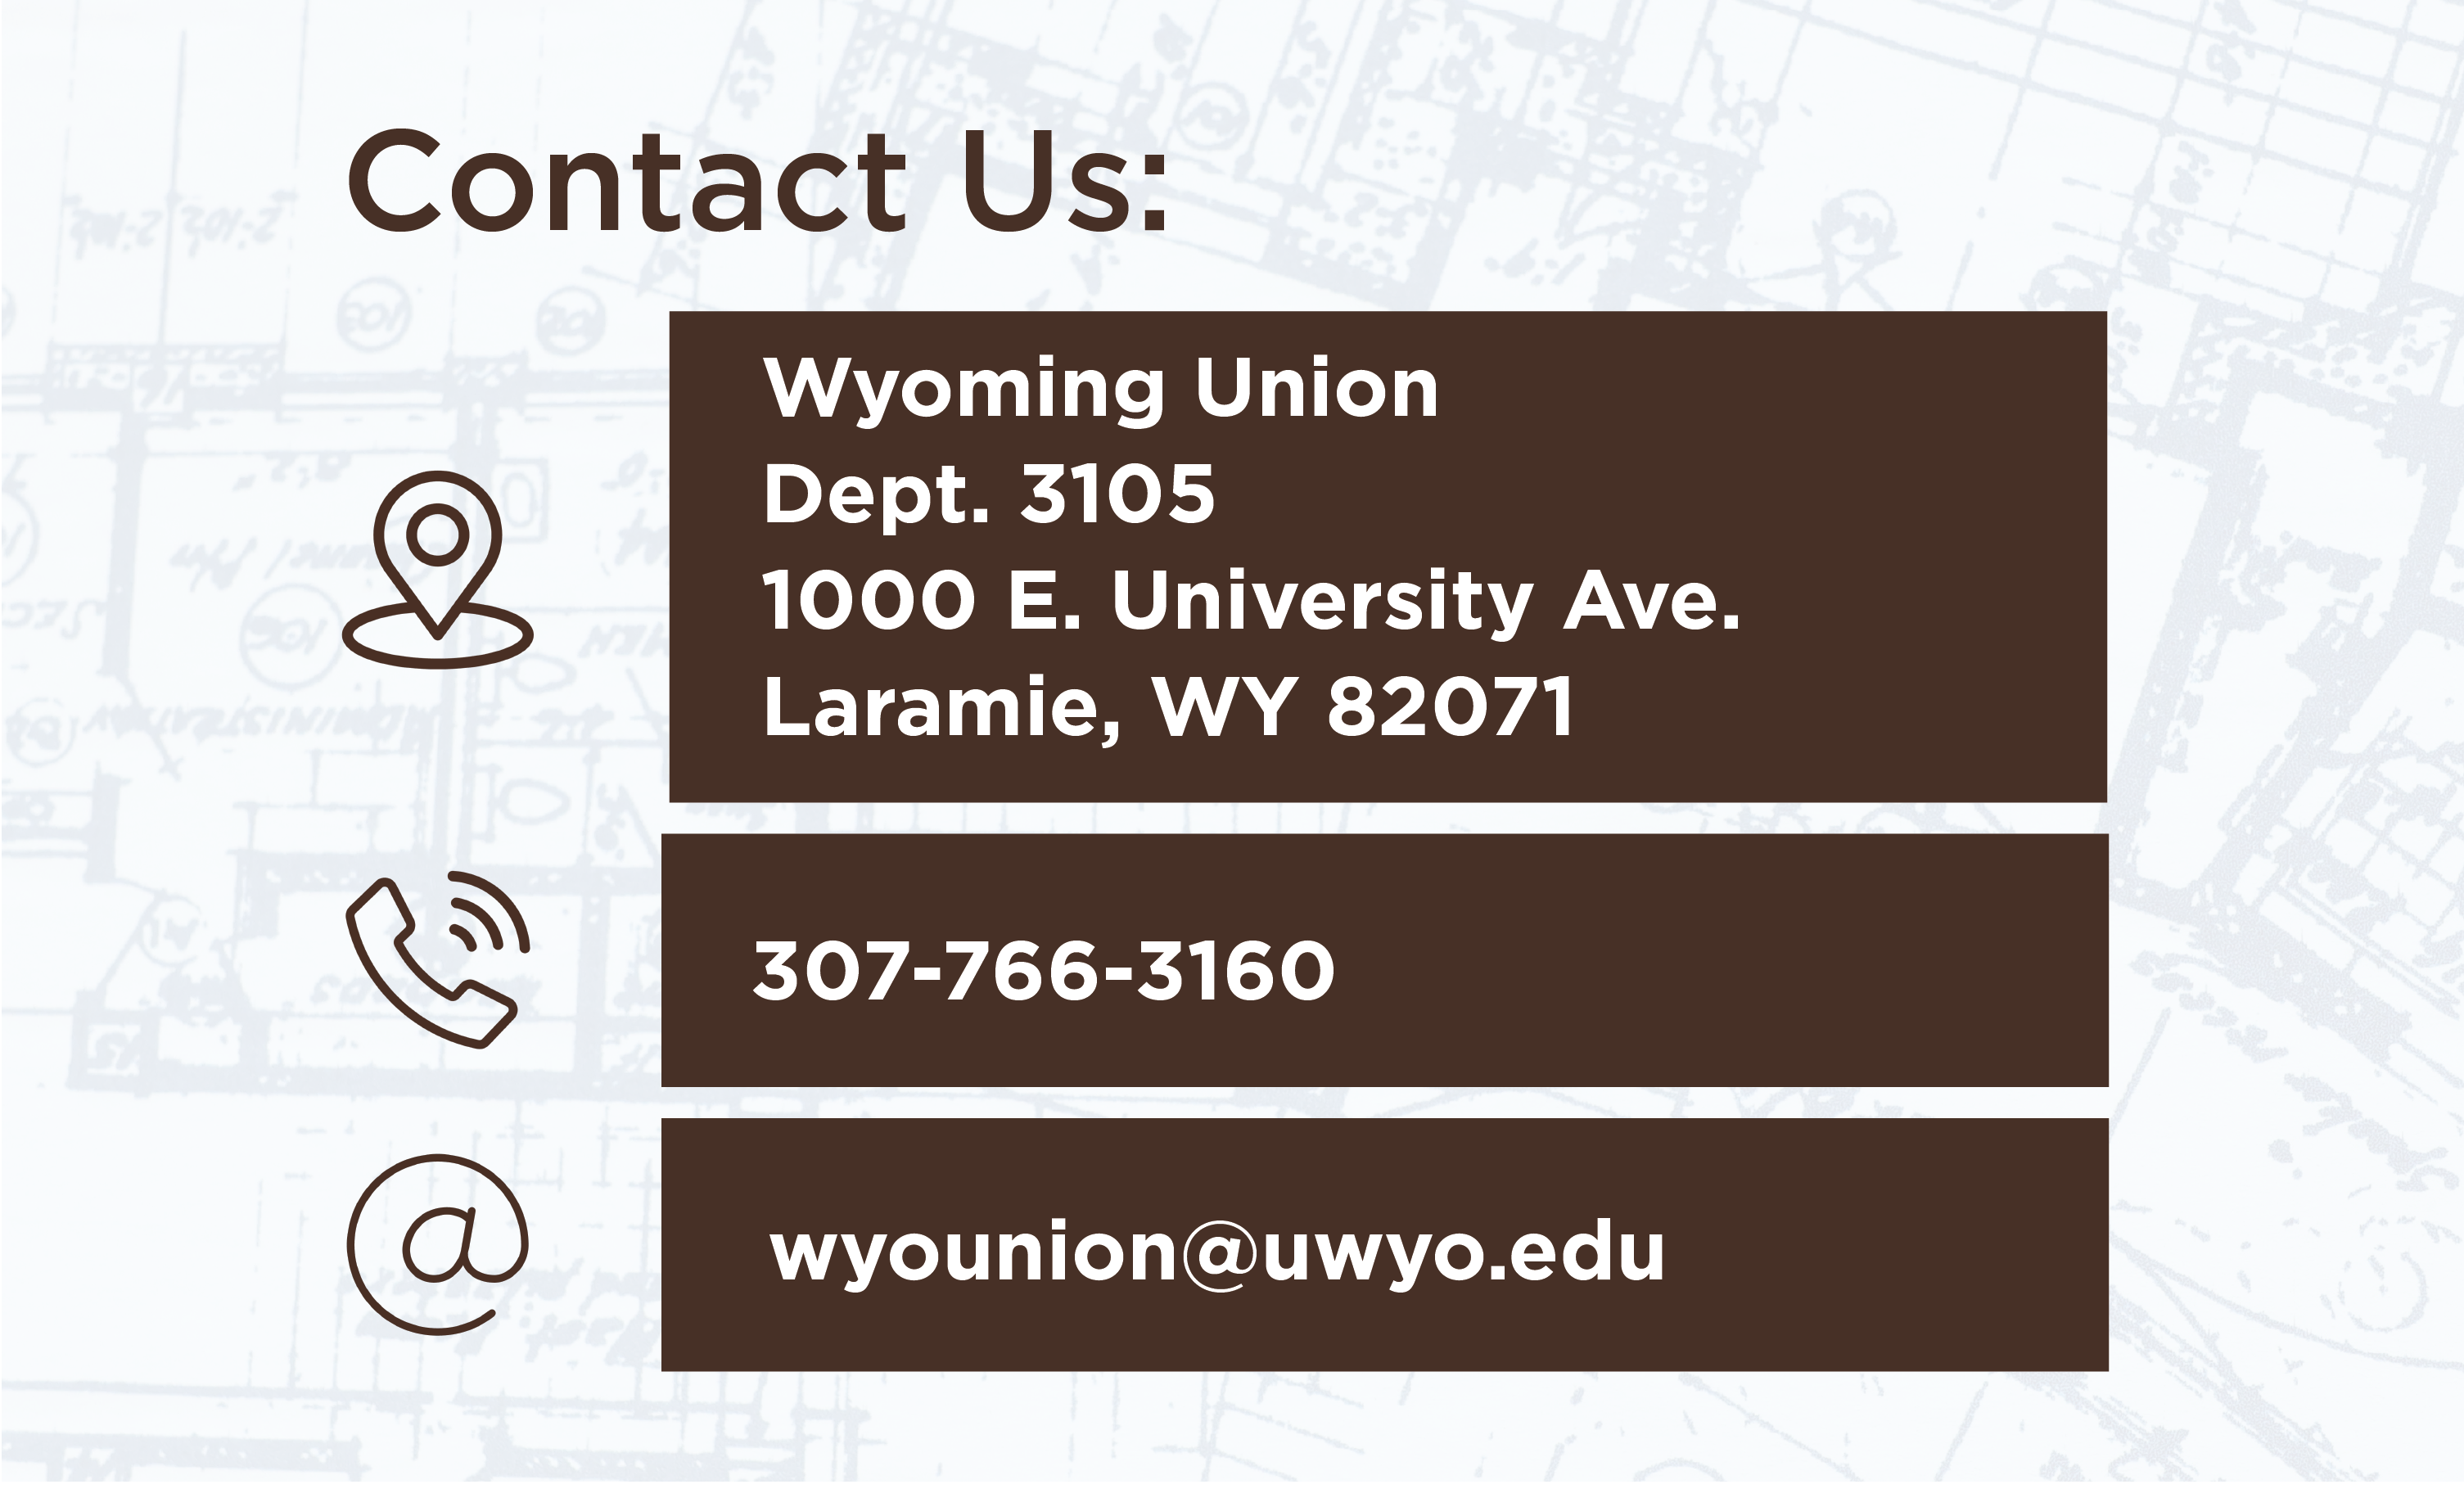 Contact Us: Wyoming Union Dept 3105 1000 E University Ave Laramie, WY 82071 Phone: 307-766-3160 Email wyounion@uwyo.edu